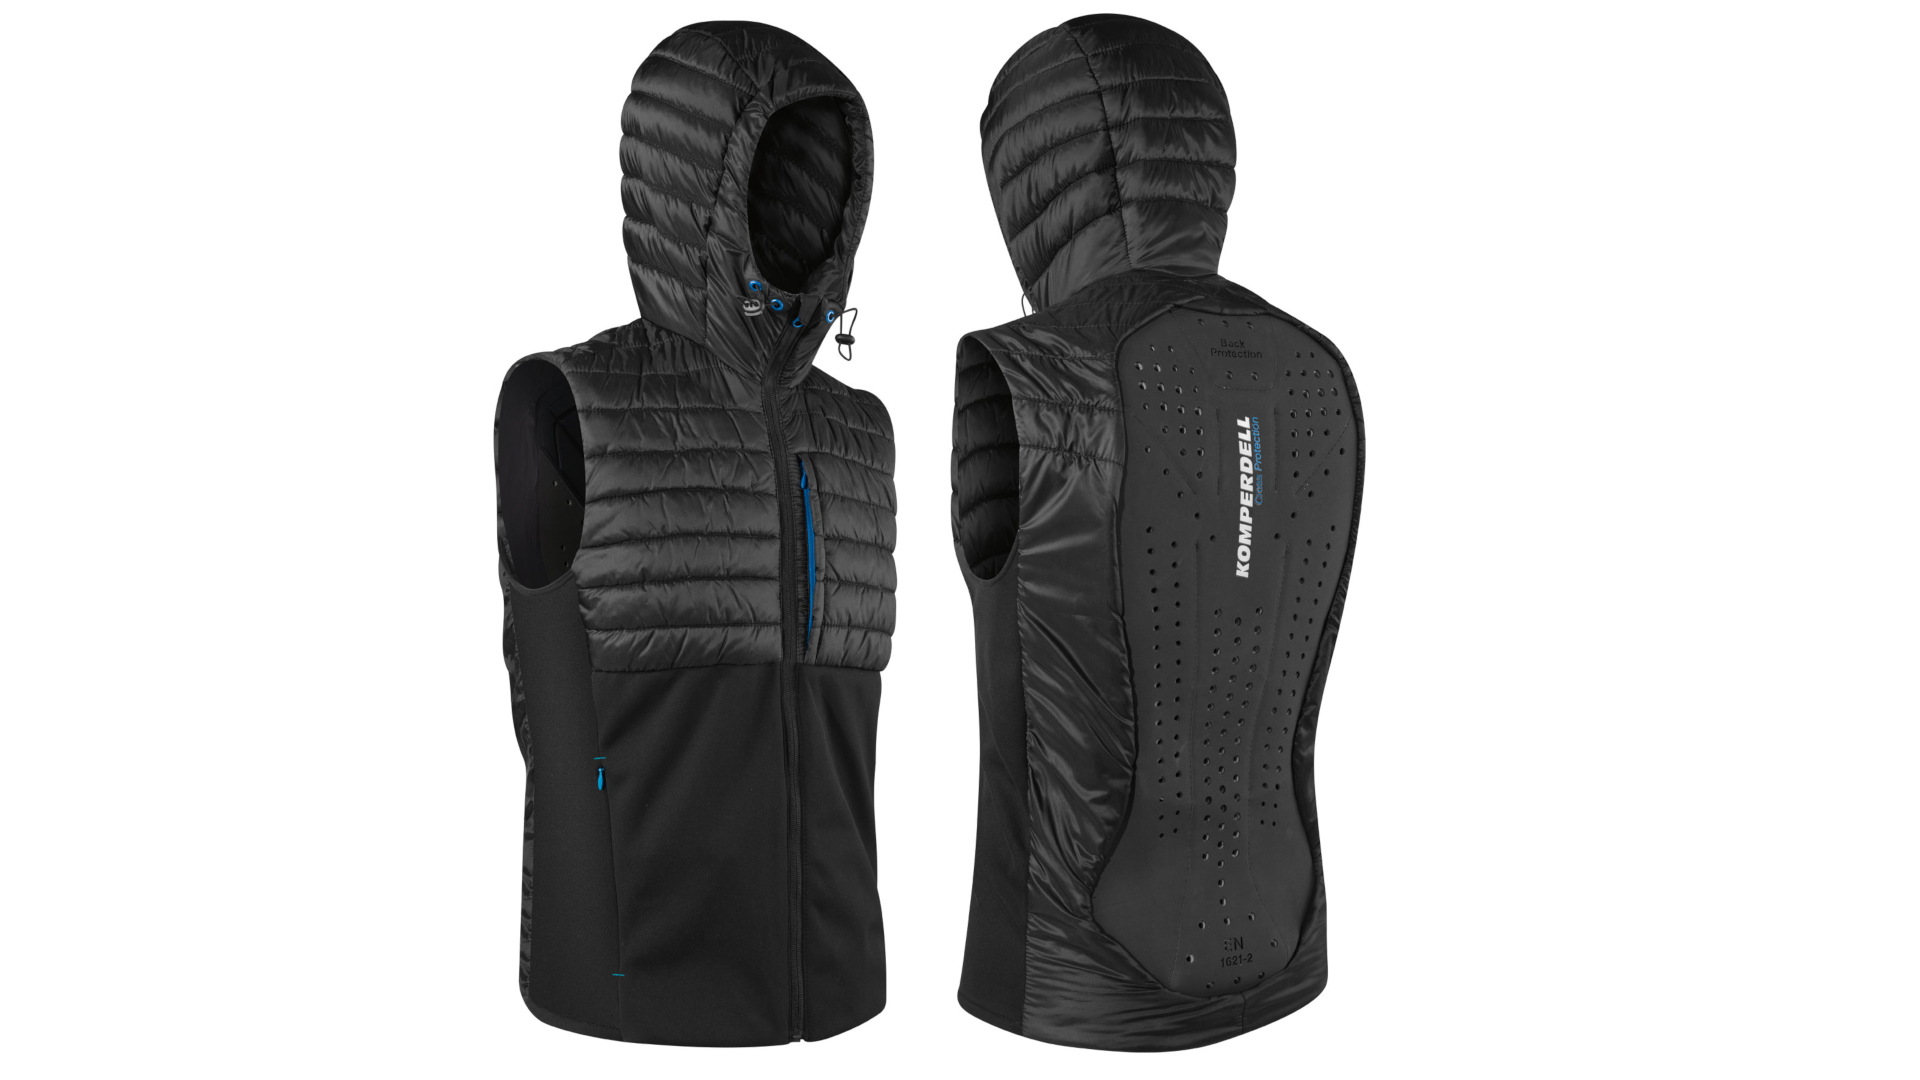 Buy Ski & Snowboard Back & Body Protector Vests - Komperdell